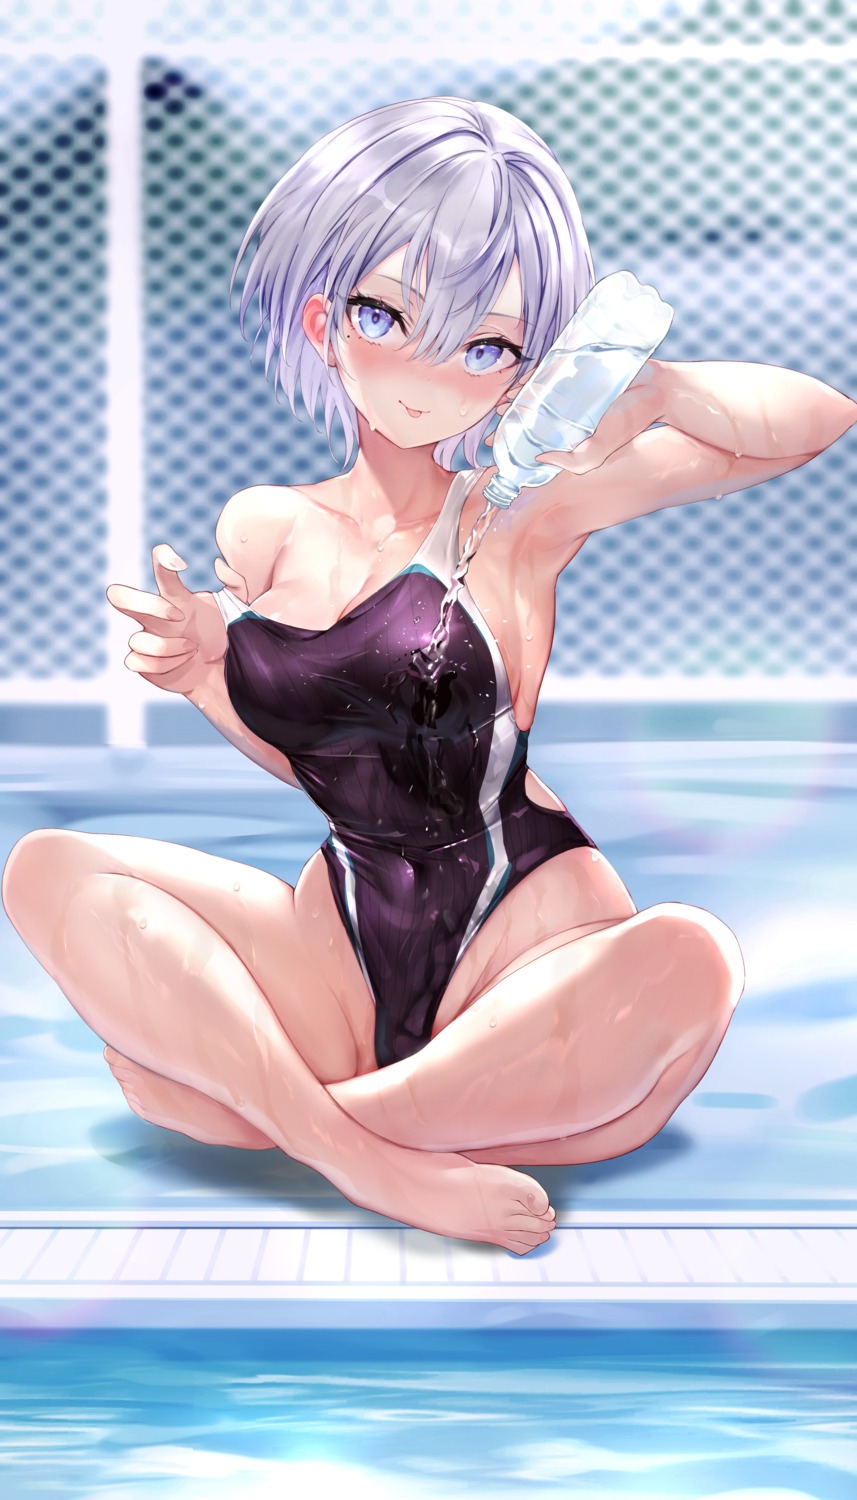 haishiki swimsuits undressing wet